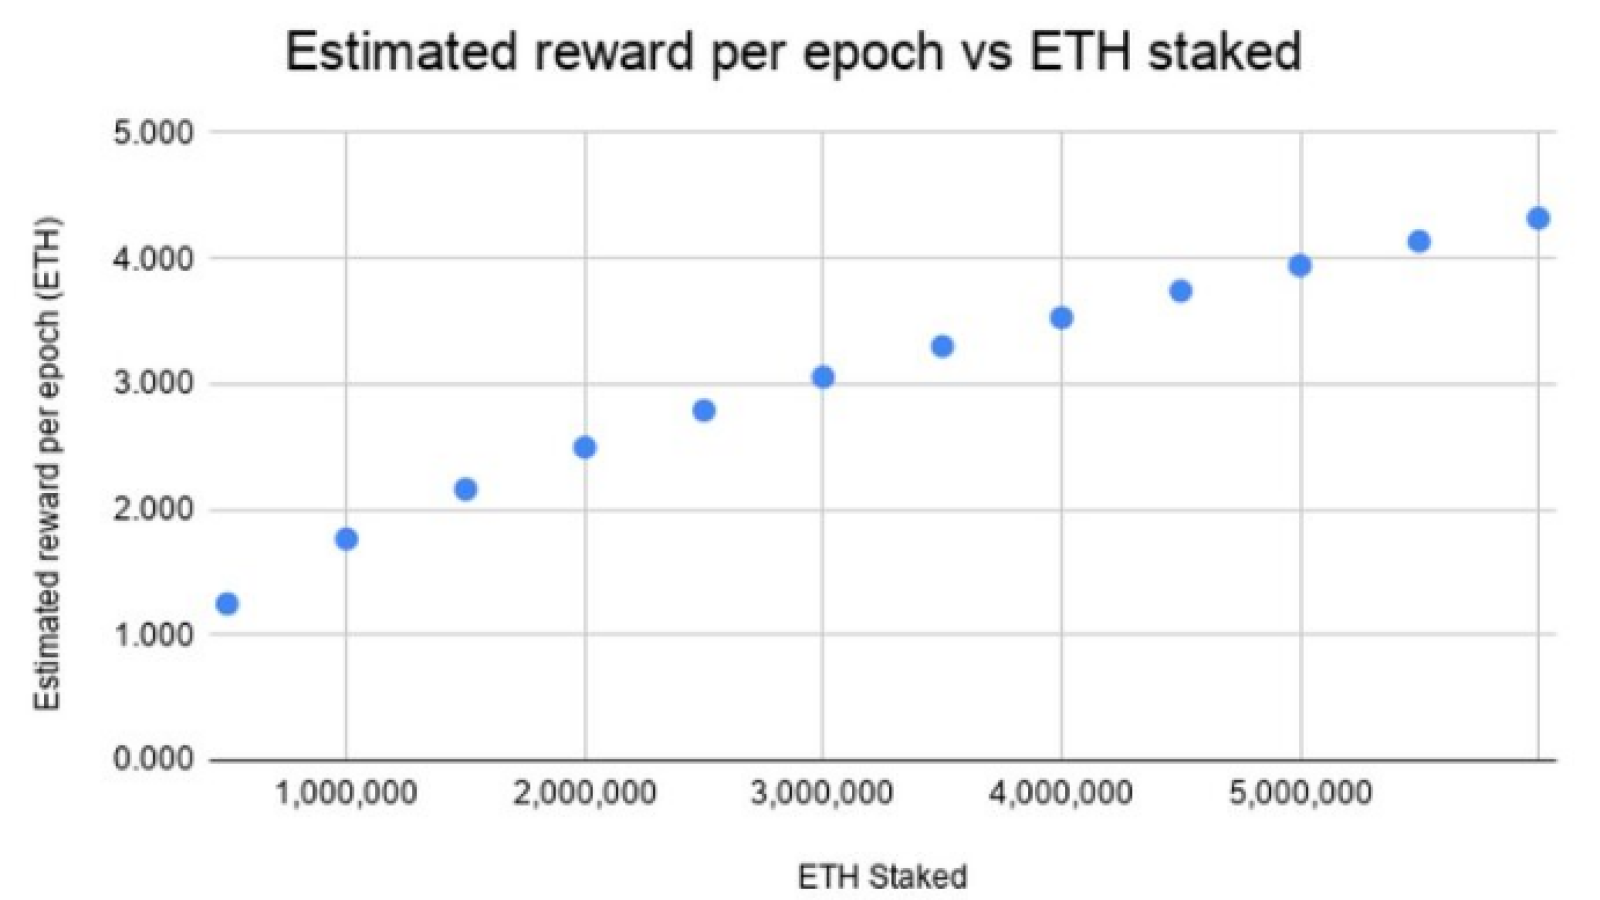 Estimated reward per epoch on ETH staked